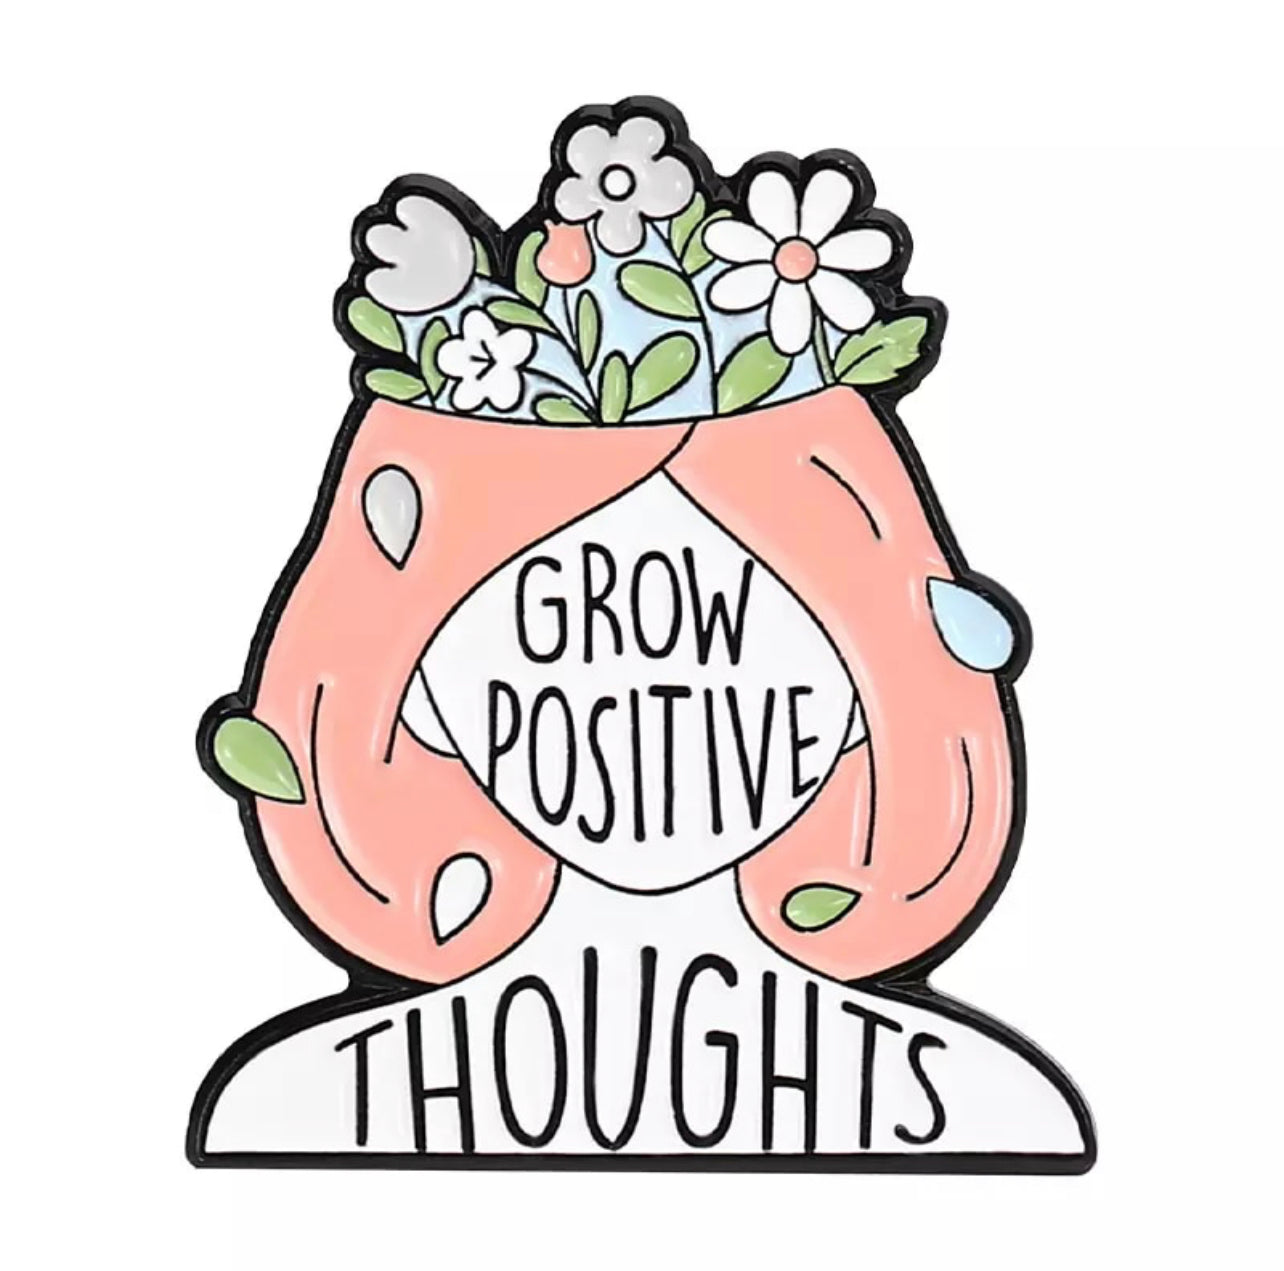 Grow positive